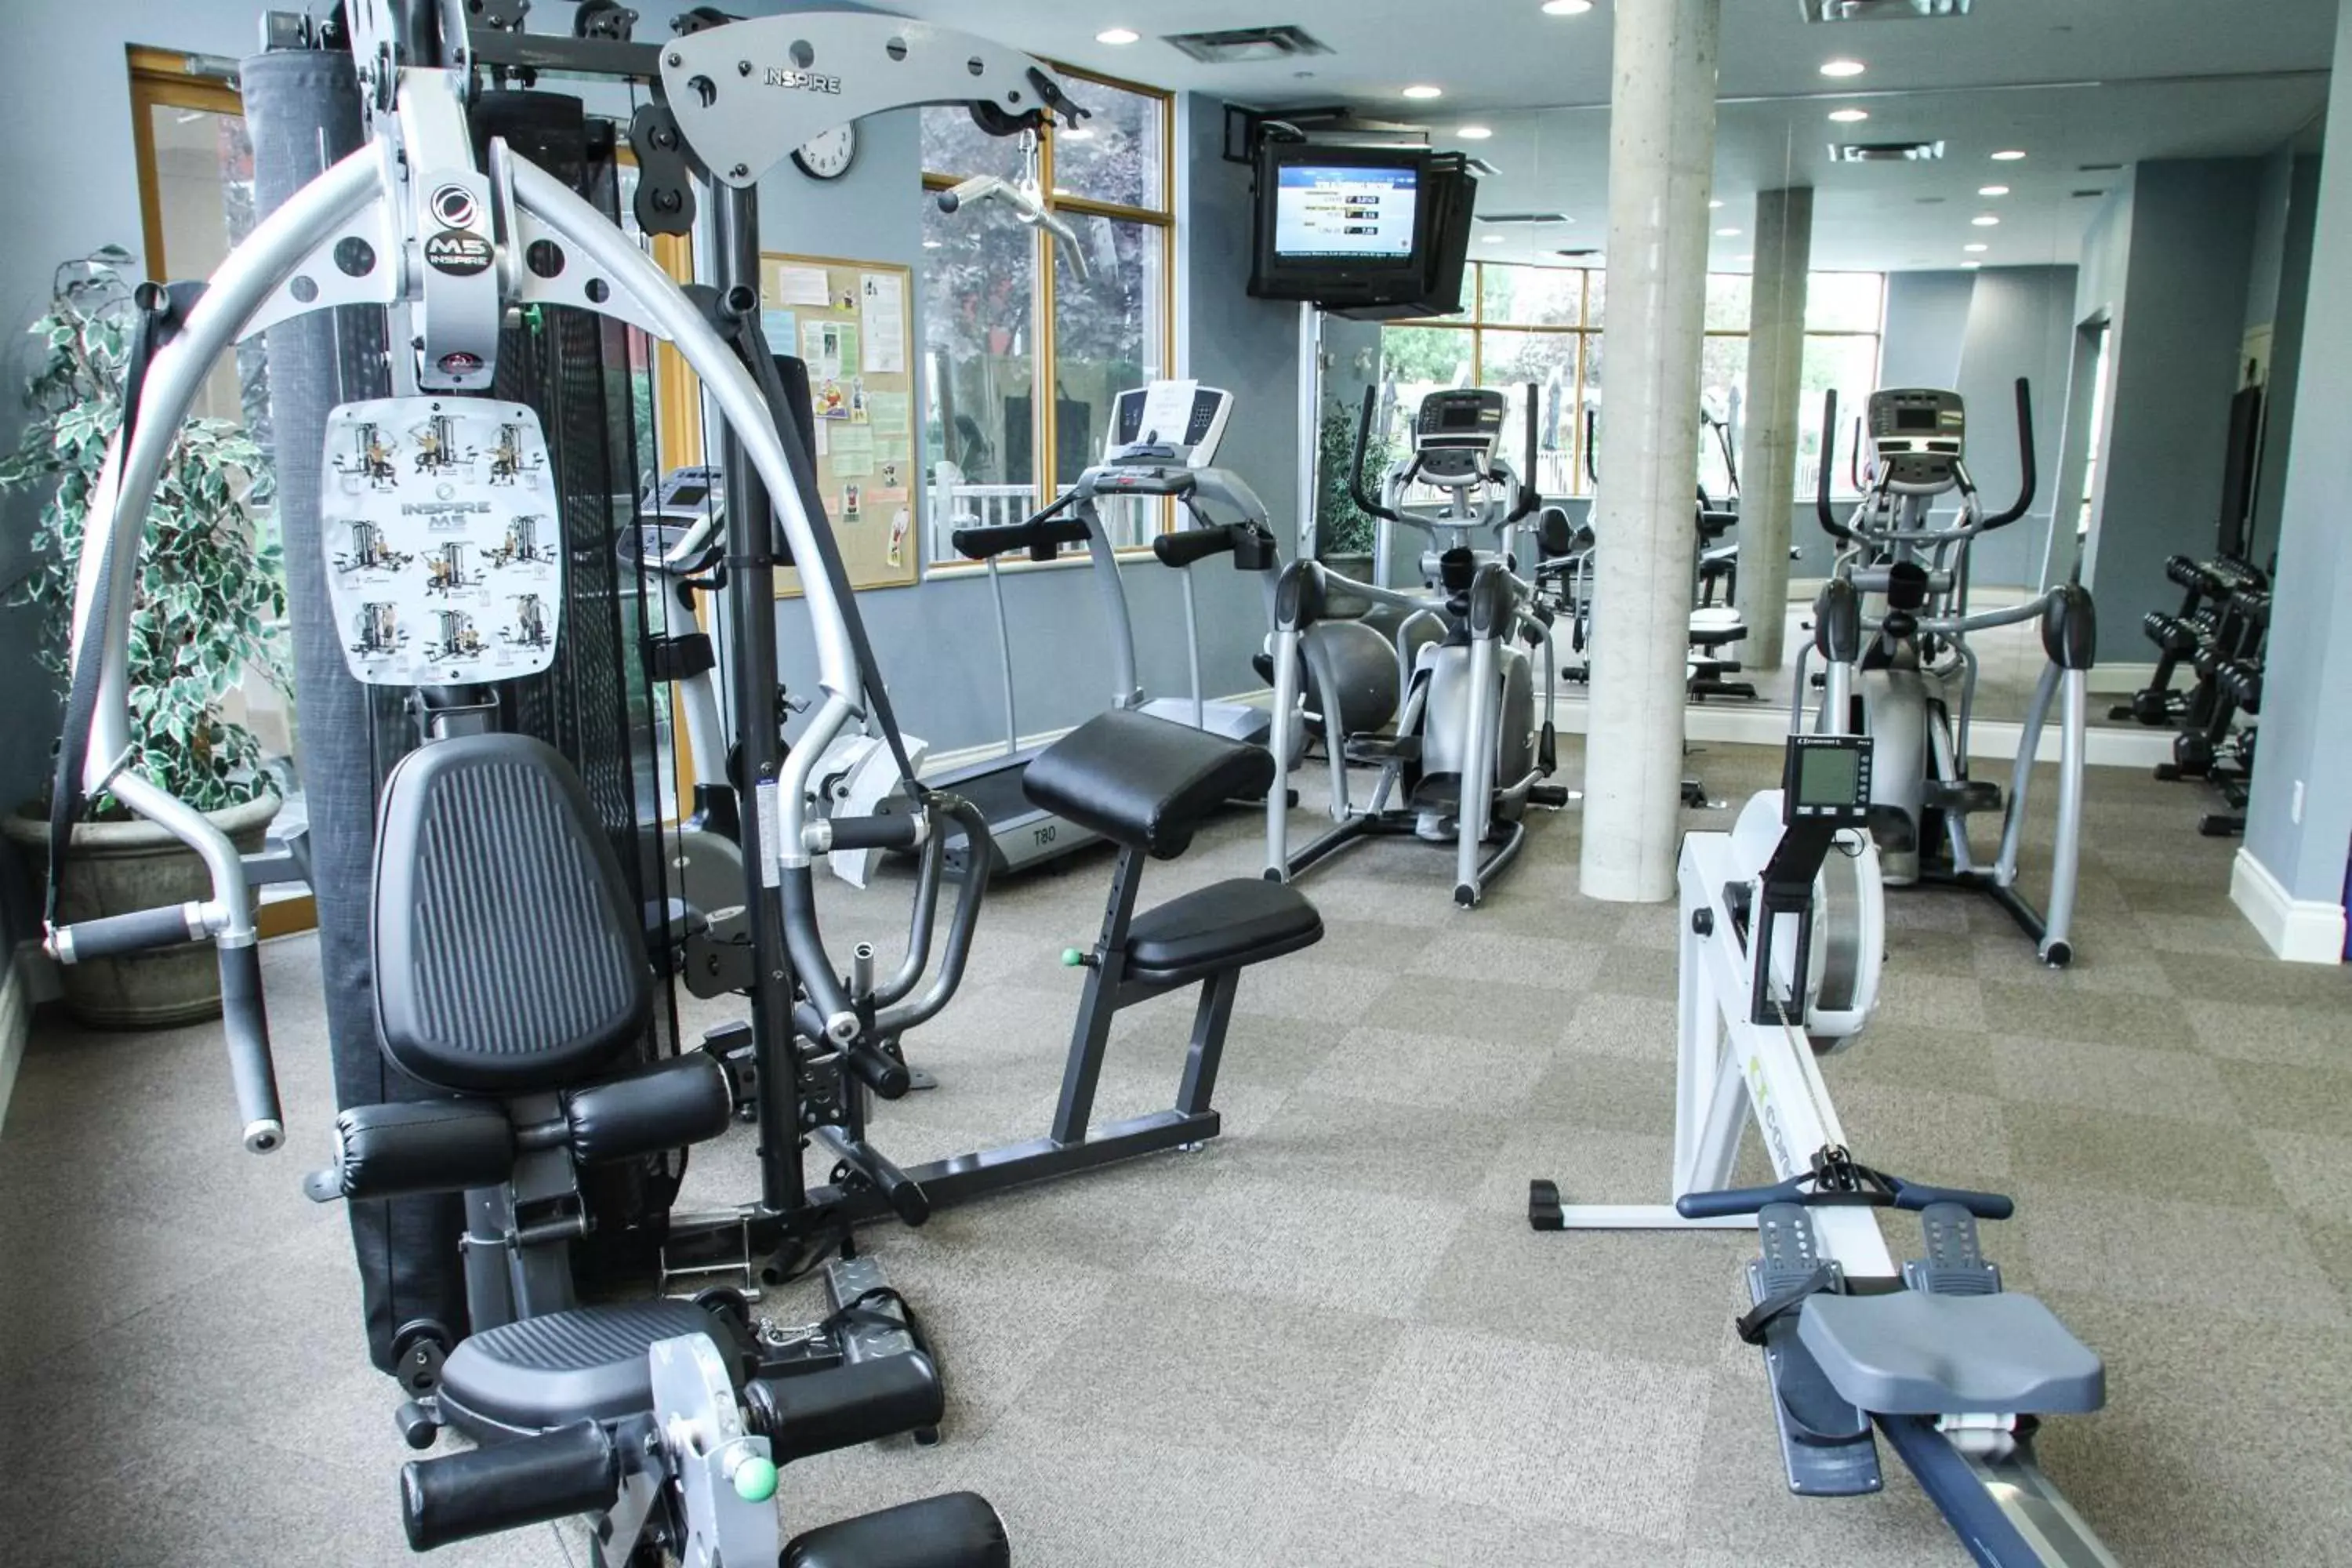 Fitness centre/facilities, Fitness Center/Facilities in Manteo at Eldorado Resort